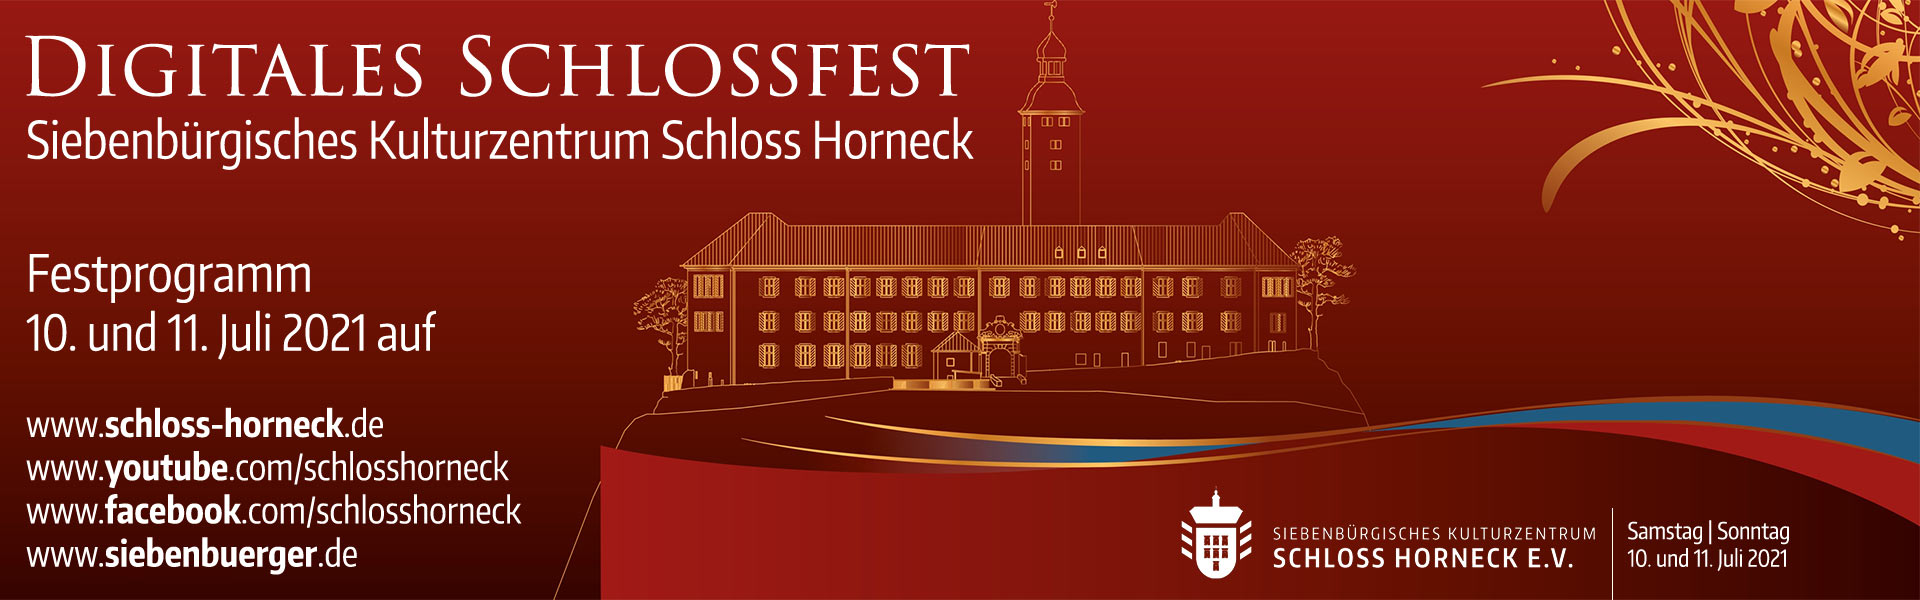 Digitales Schlossfest 2021